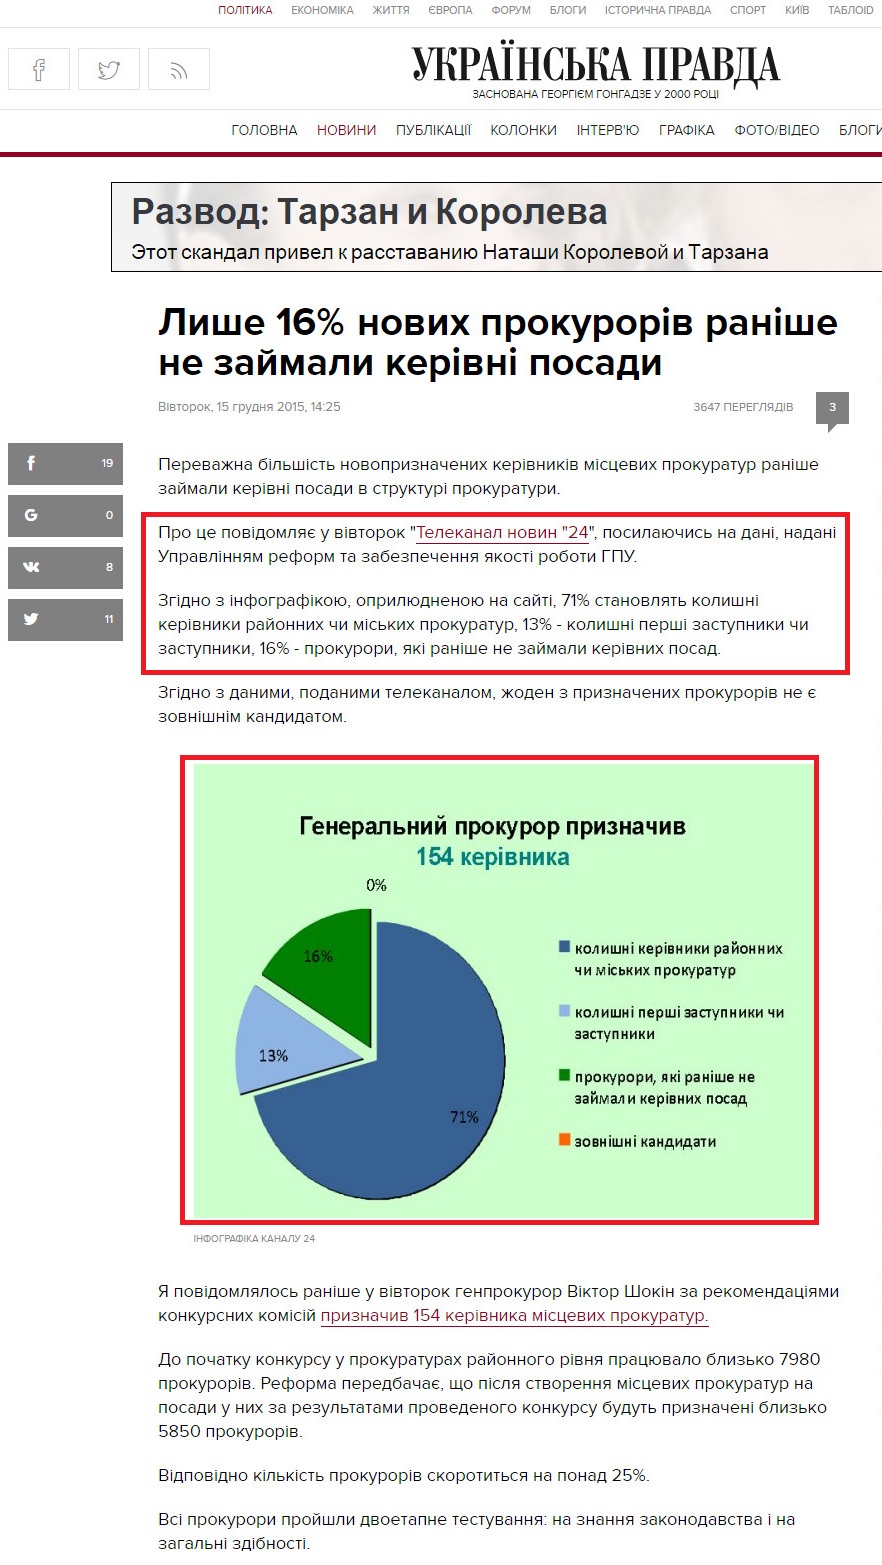 avda.com.ua/news/2015/12/15/7092601/